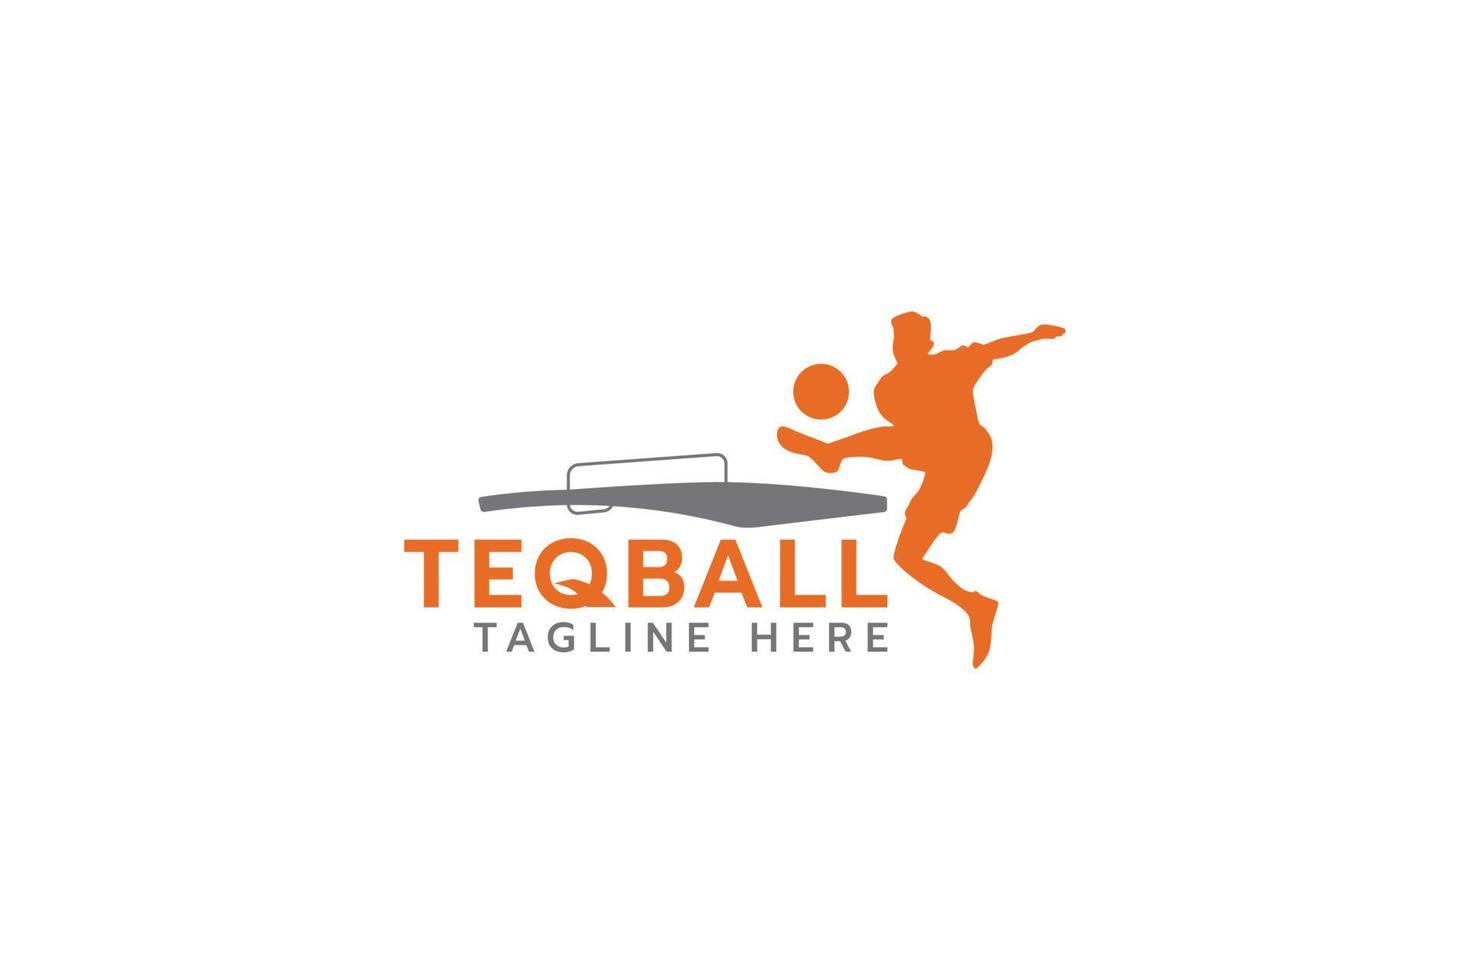 logotipo de teqball con silueta de persona saltando en el juego de teqball. vector